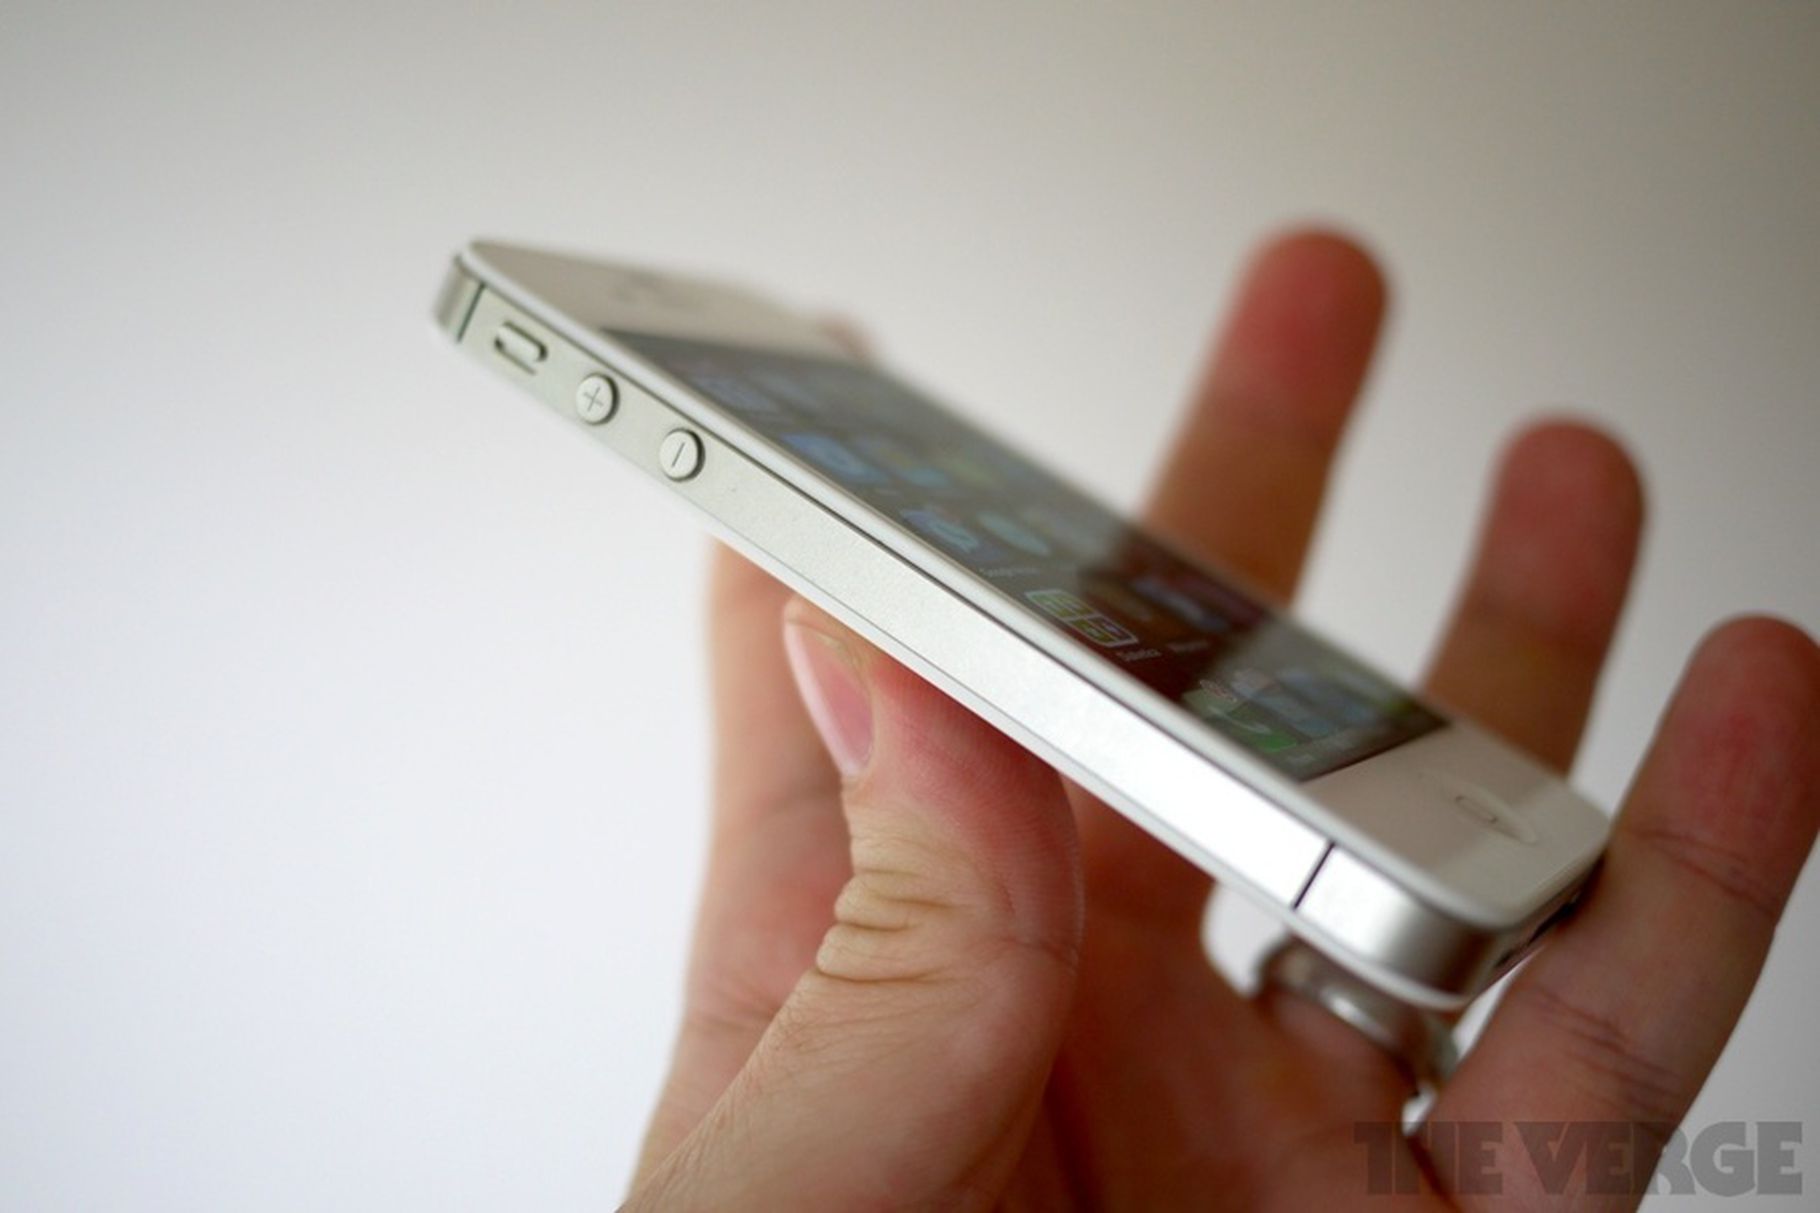 Apple có thể sẽ triển khai chương trình sửa chữa cho các thiết bị cũ như iPhone 4S và các thiết bị từ 2012